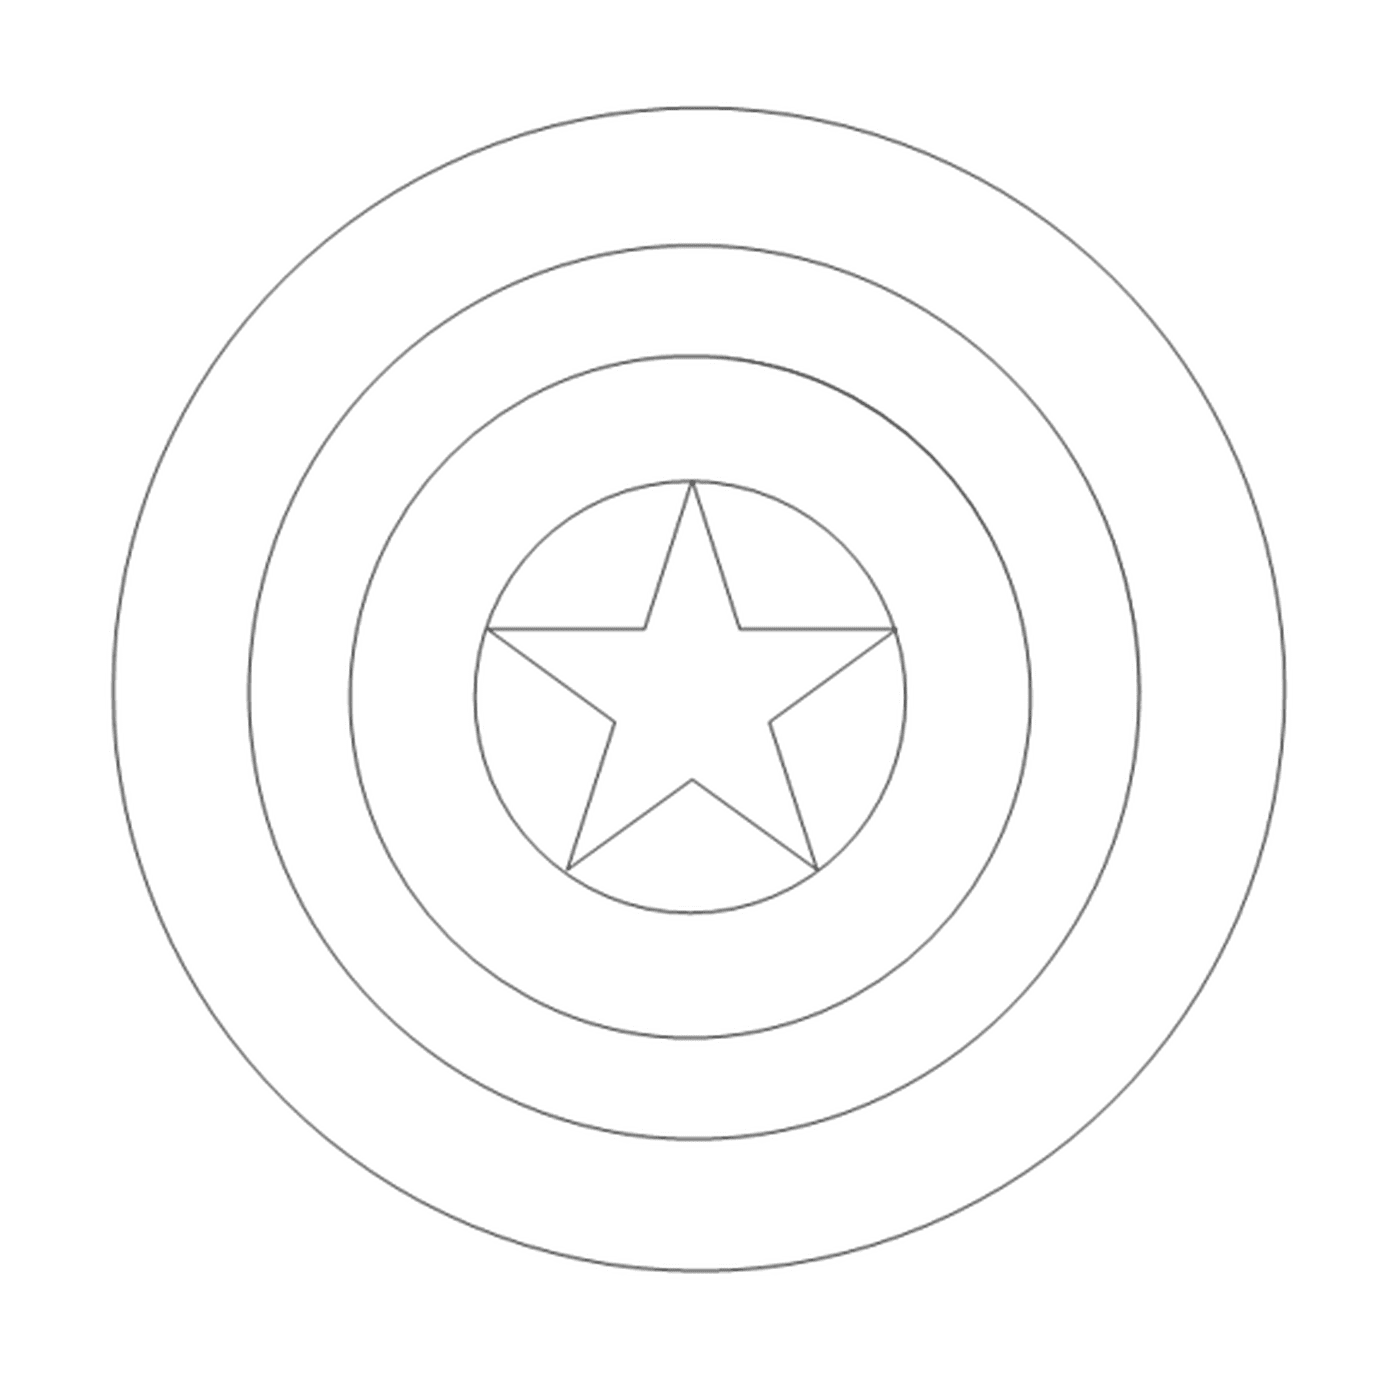  Uma estrela no centro de um círculo 